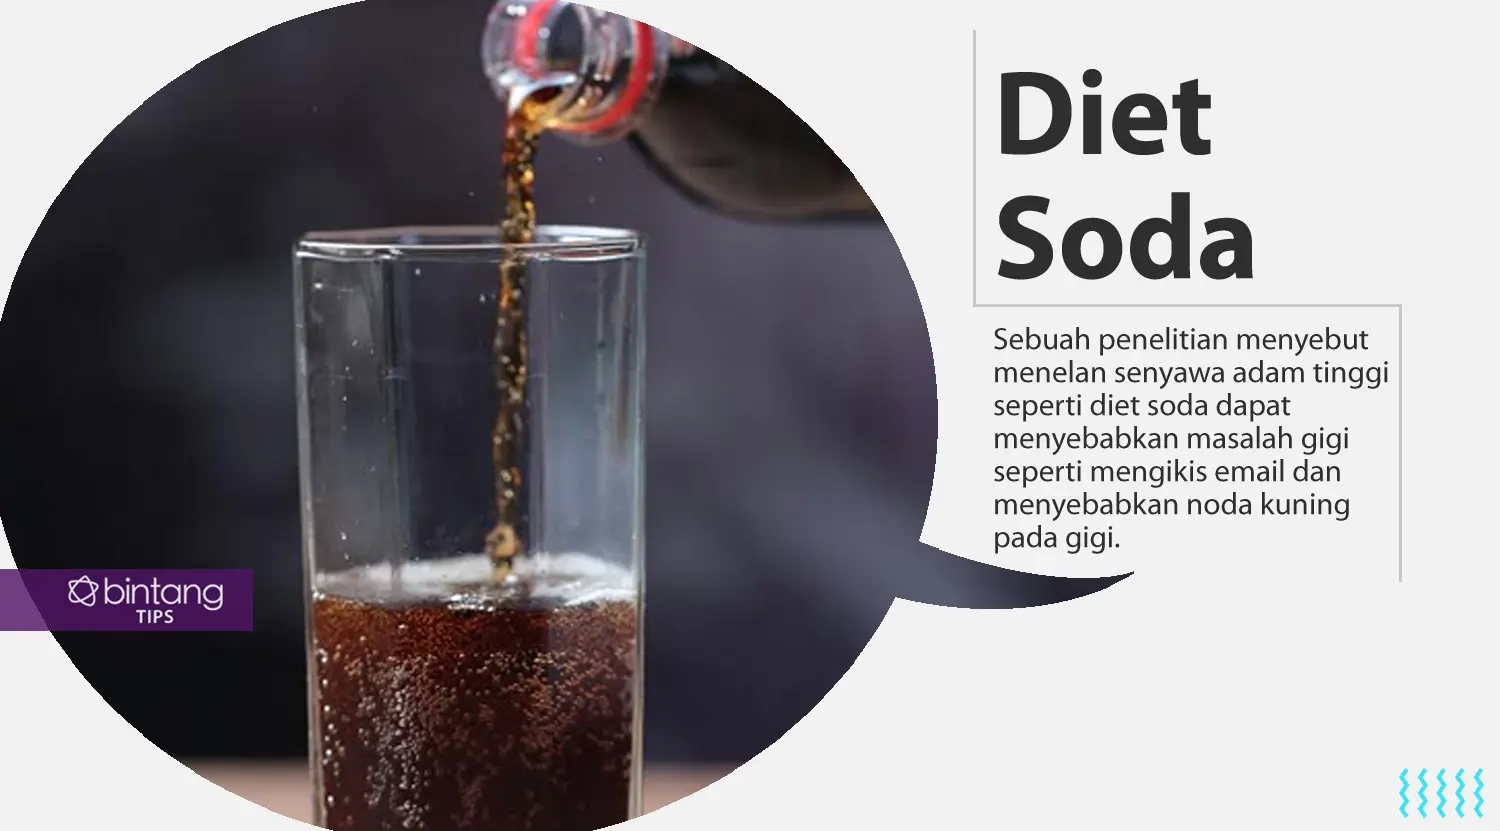 Jangan masukan makanan dan minuman ini ke mulutmu. (Foto: Deki Prayoga, Digital Imaging: M. Iqbal Nurfajri/Bintang.com)